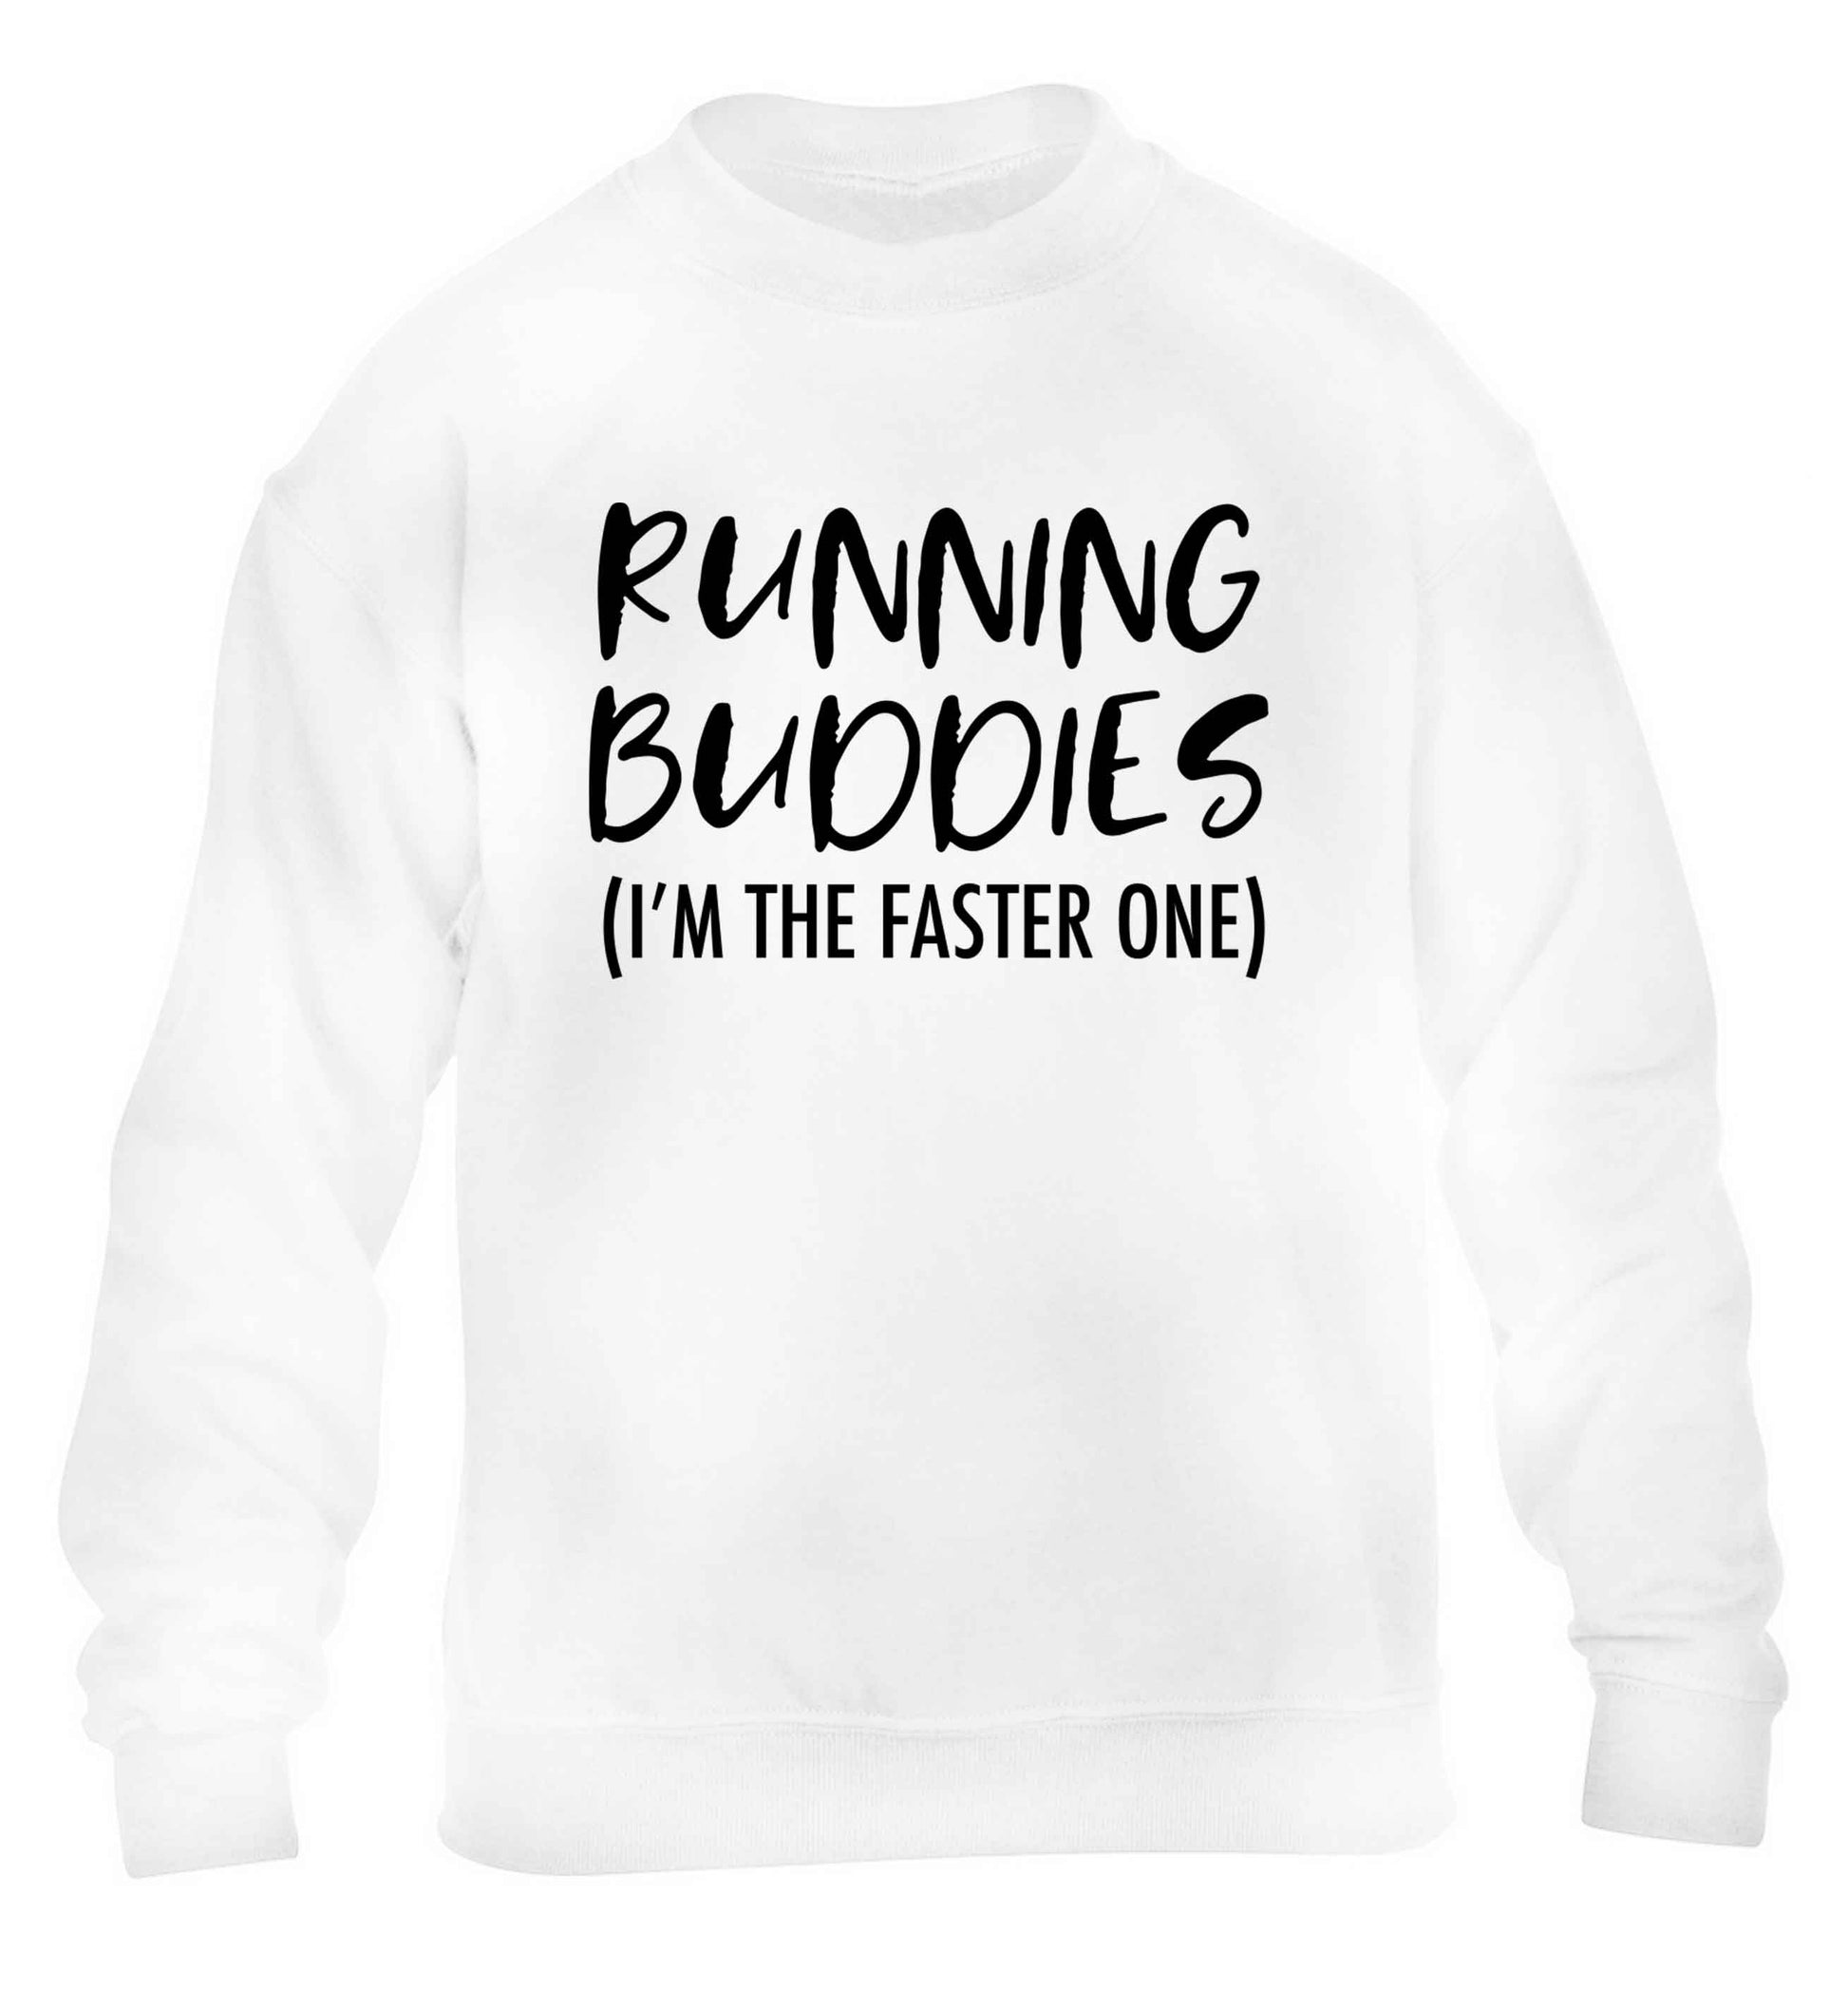 Running buddies (I'm the faster one) children's white sweater 12-13 Years